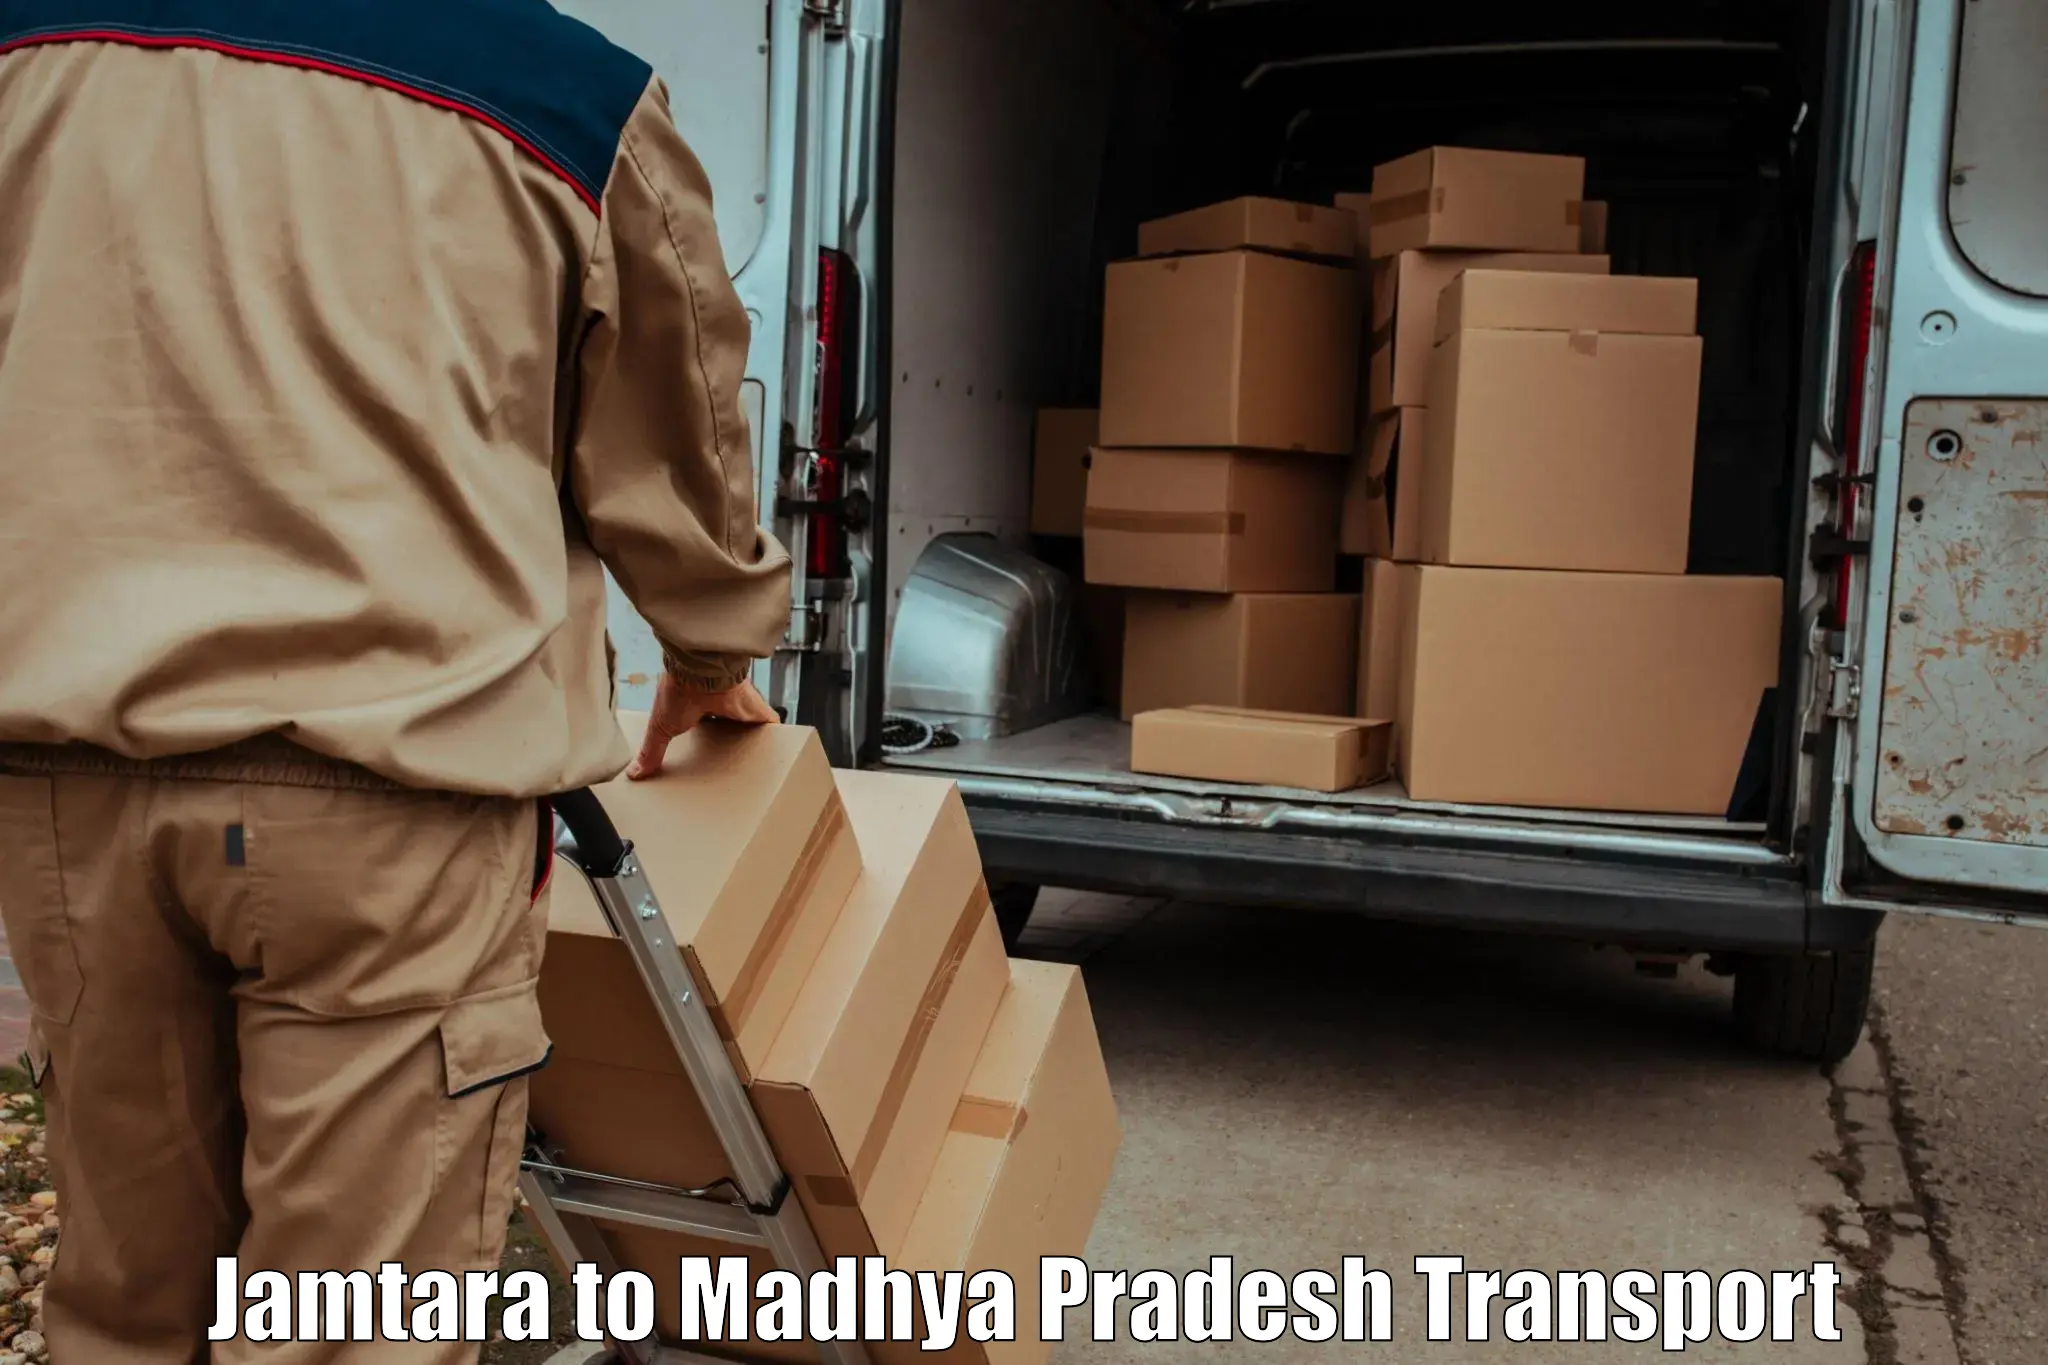 Cargo transportation services Jamtara to Sohagi